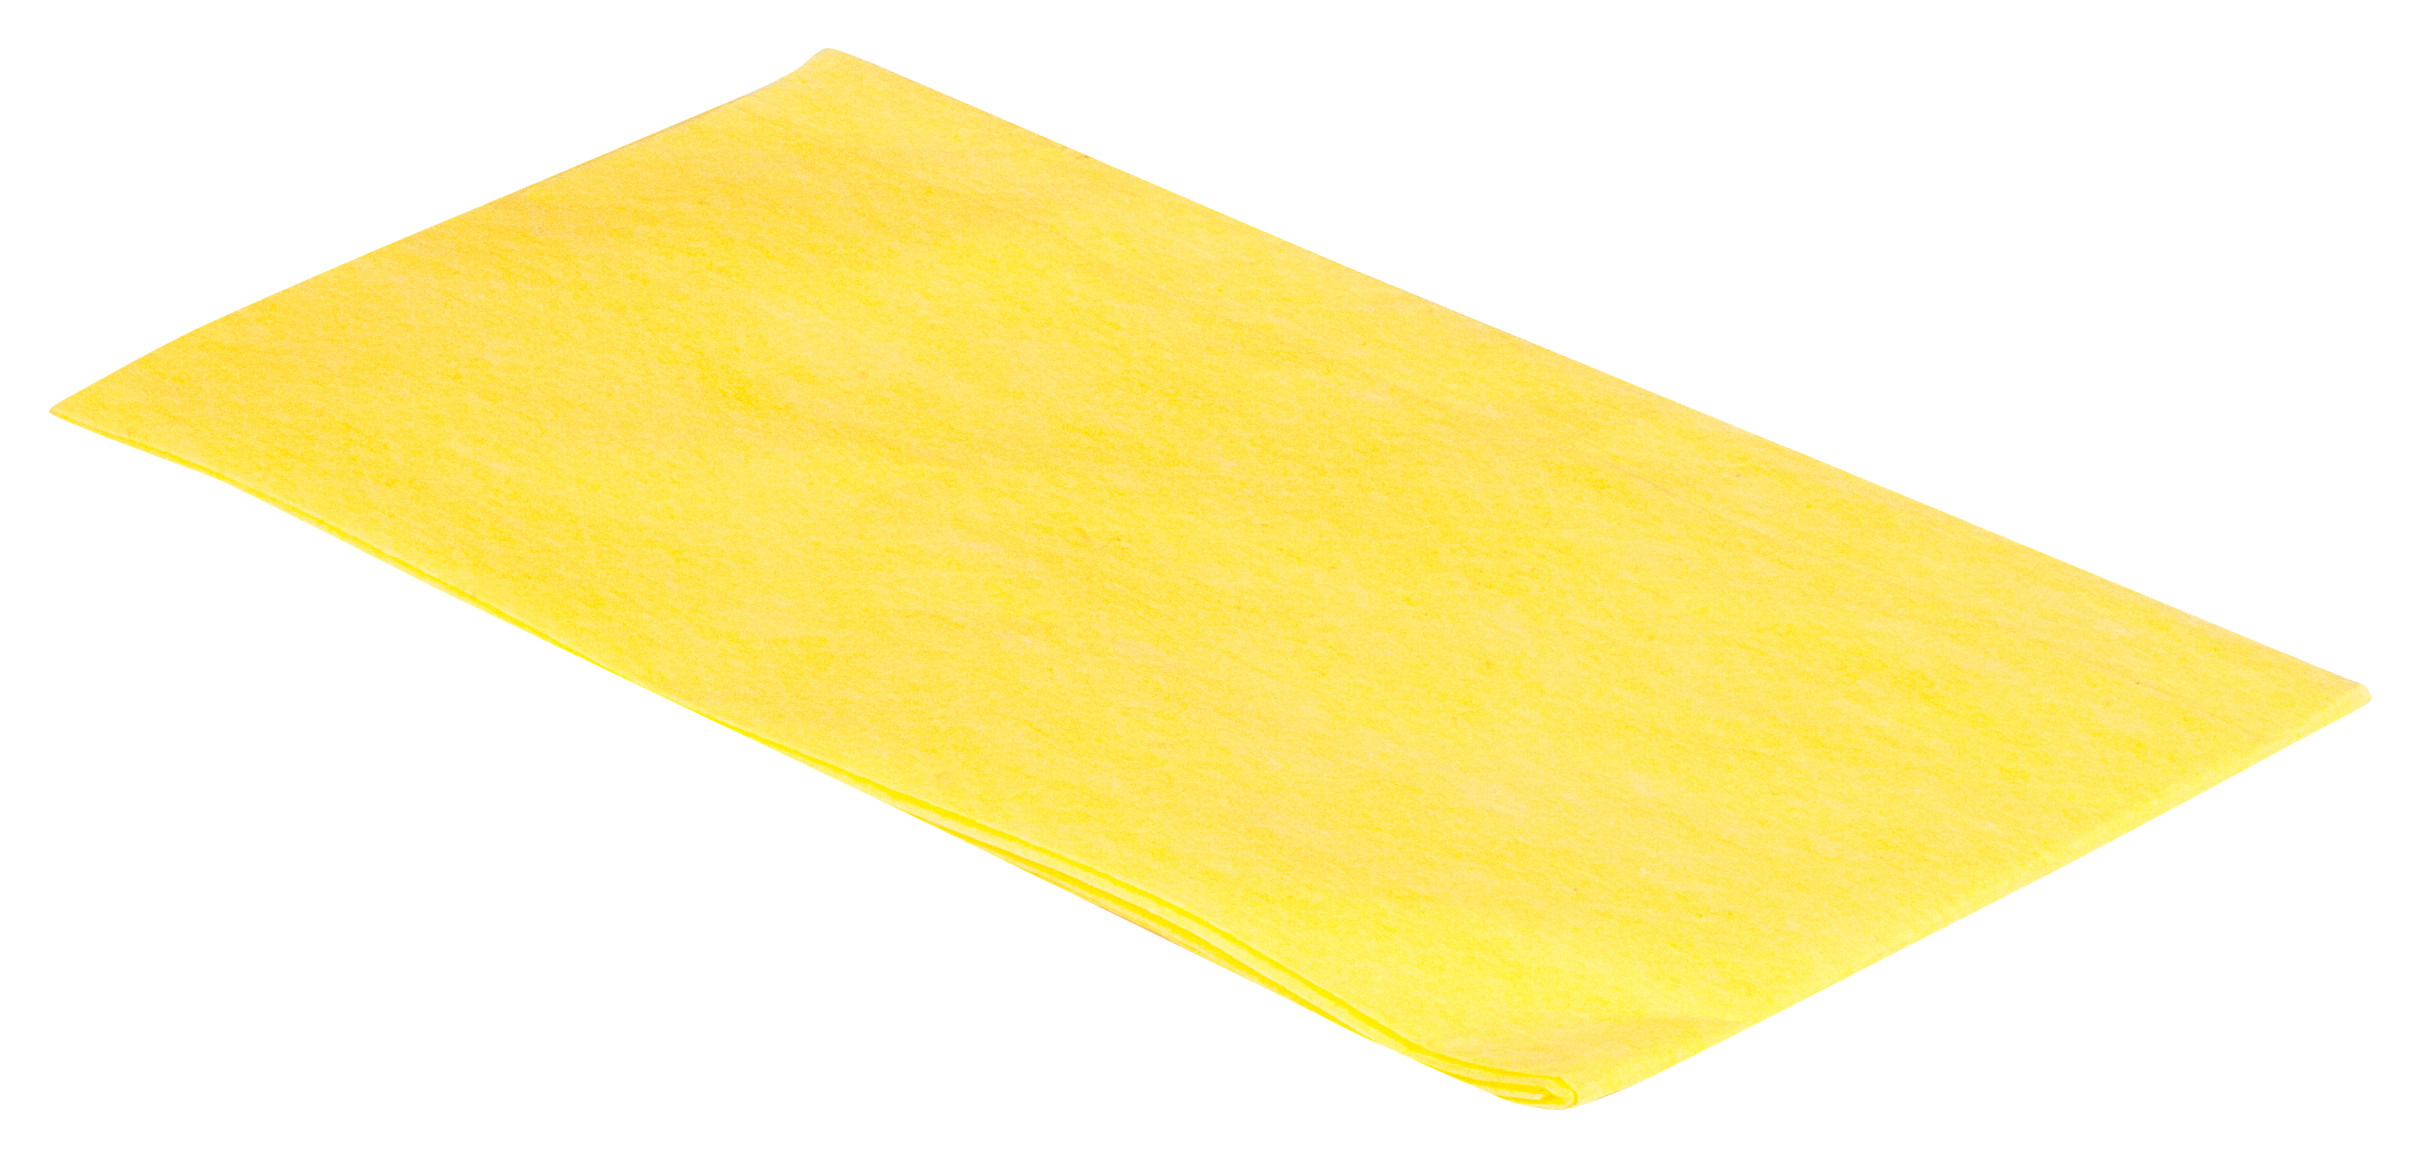 Imprägniertes Mopp-Tuch / Staubbindetuch, gelb, 60 x 30 cm, ca. 60 g/m²